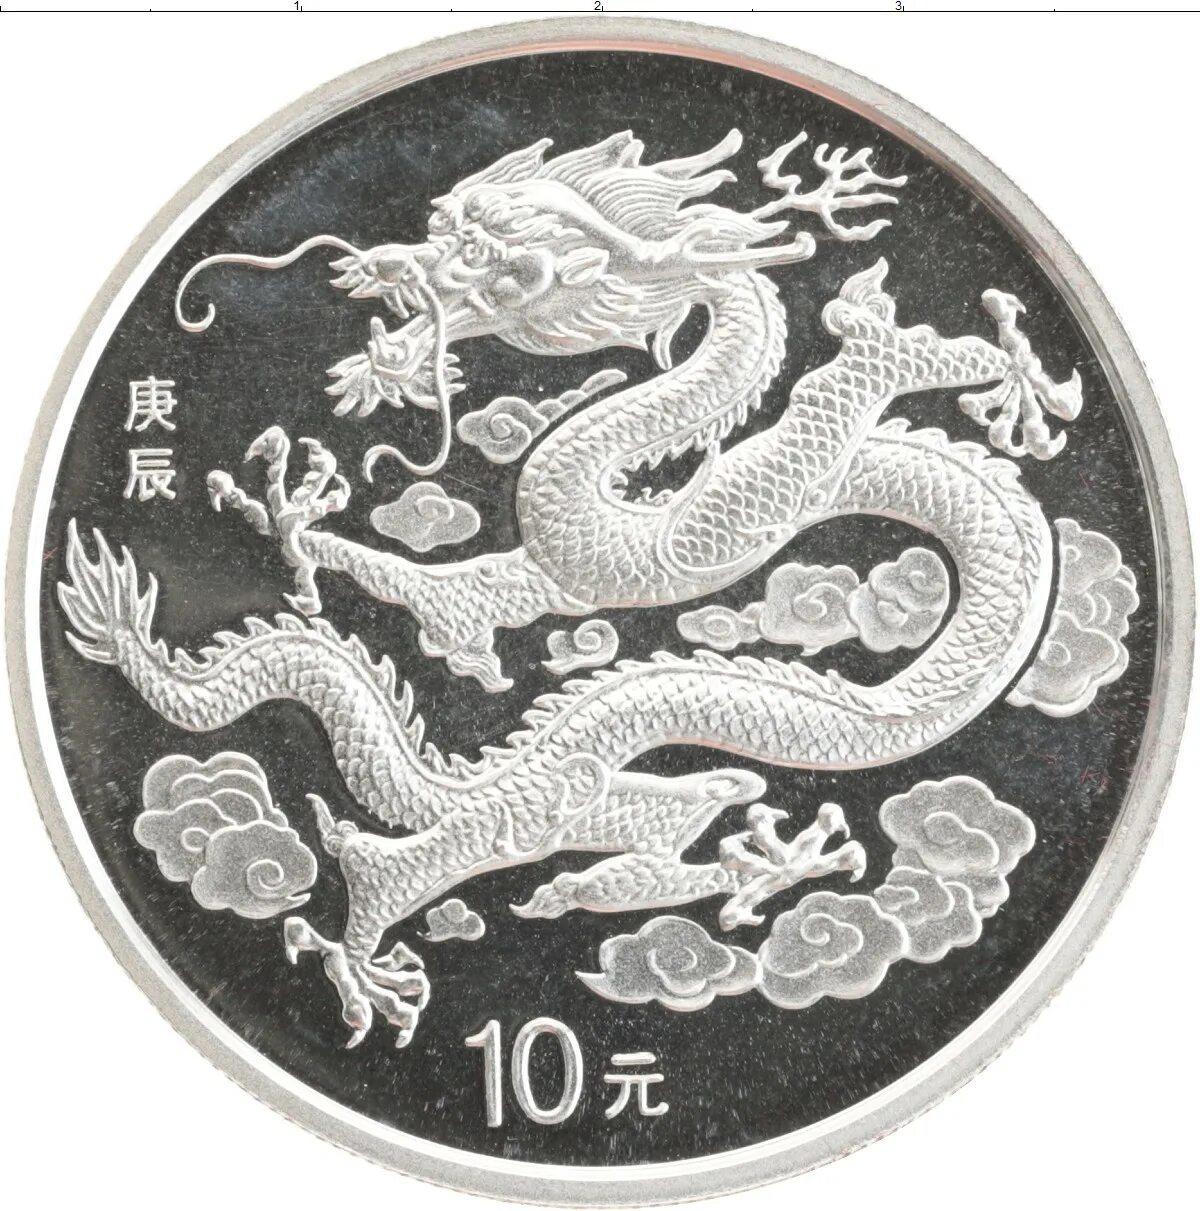 Монета года дракона. Китай 10 юаней год дракона. 10 Юаней монета. Китайская серебряная монета с драконом. Монеты Китая 10 юаней.